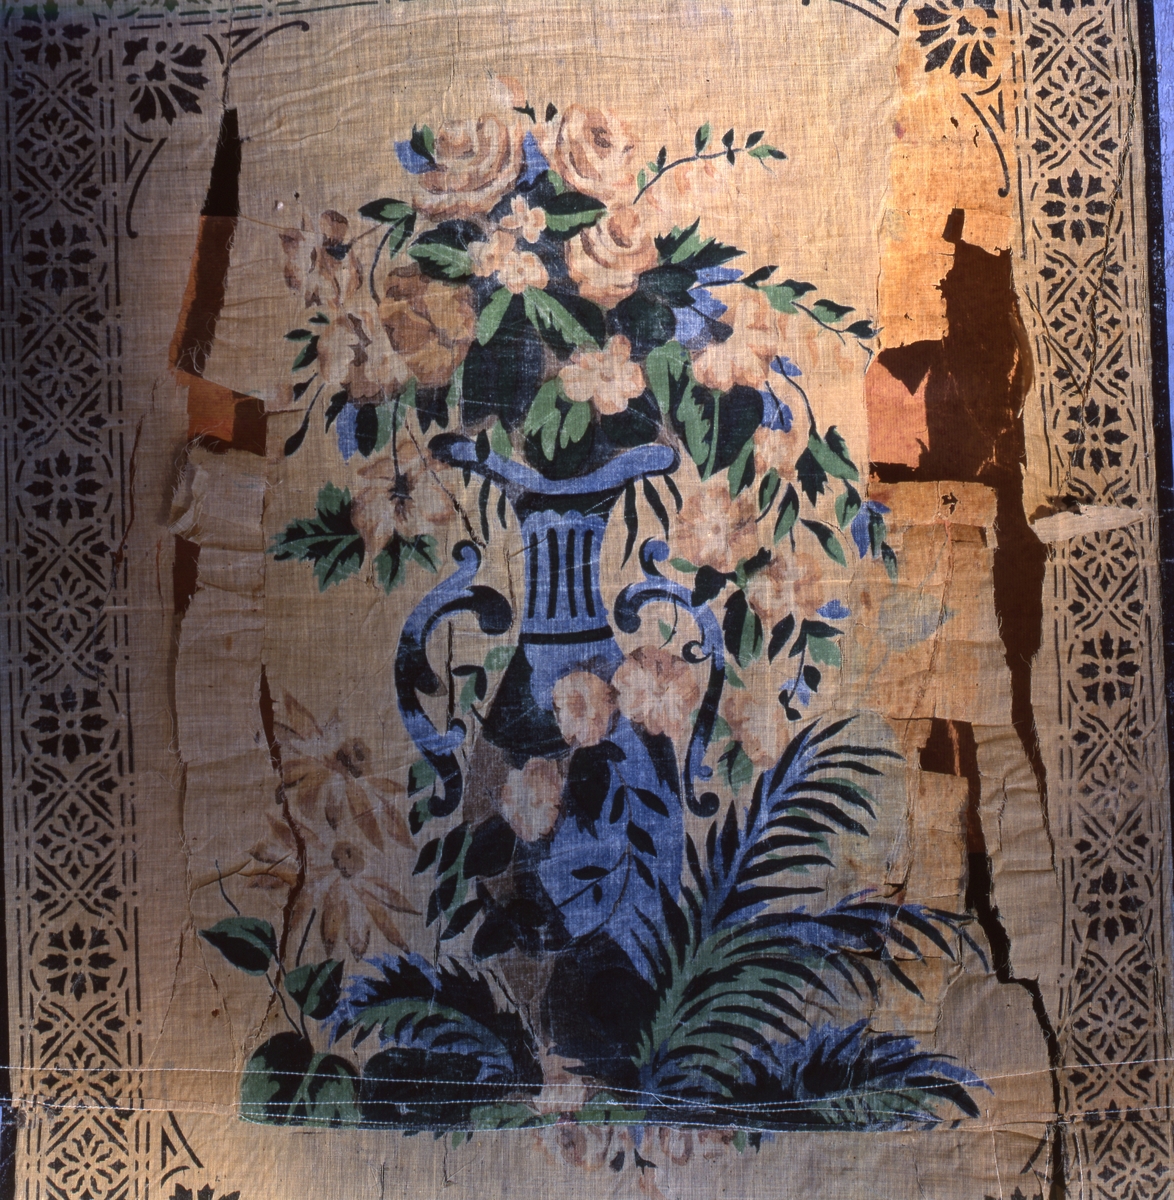 Del av rullgardin med schablontryckt mönster i form av en stor blå vas med blommor, mot ljus botten.